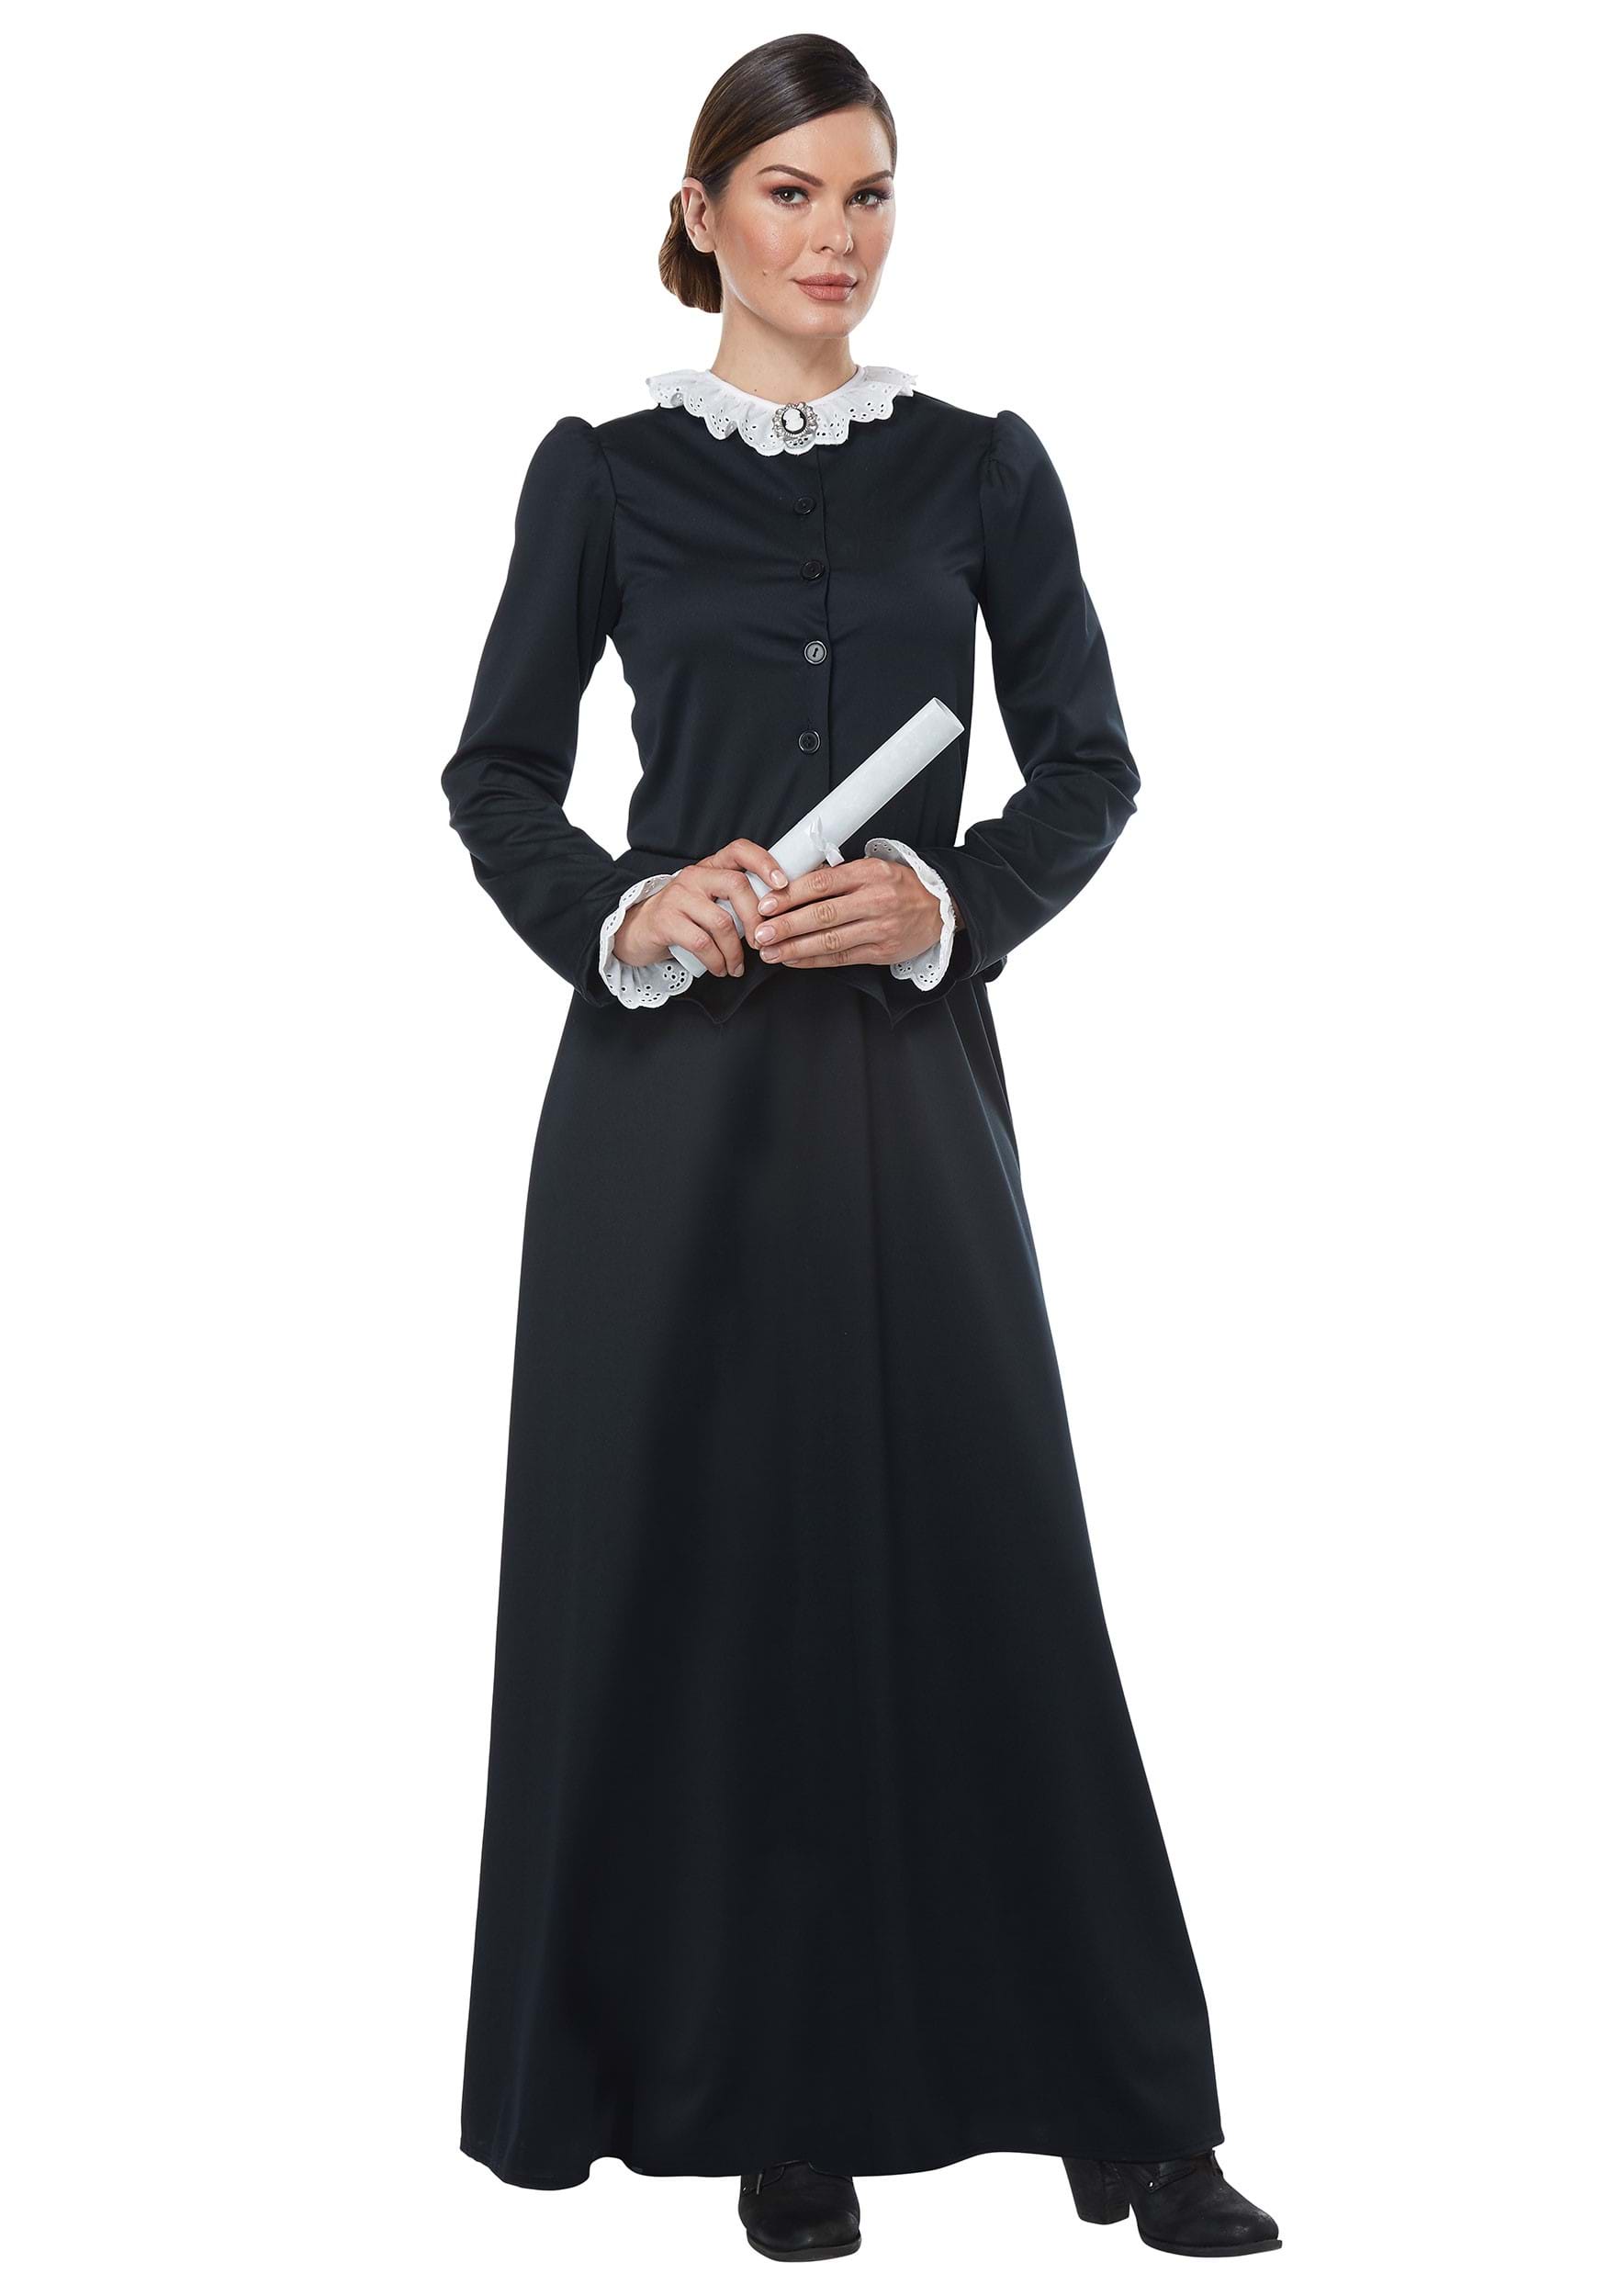 Women's Harriet Tubman Costume